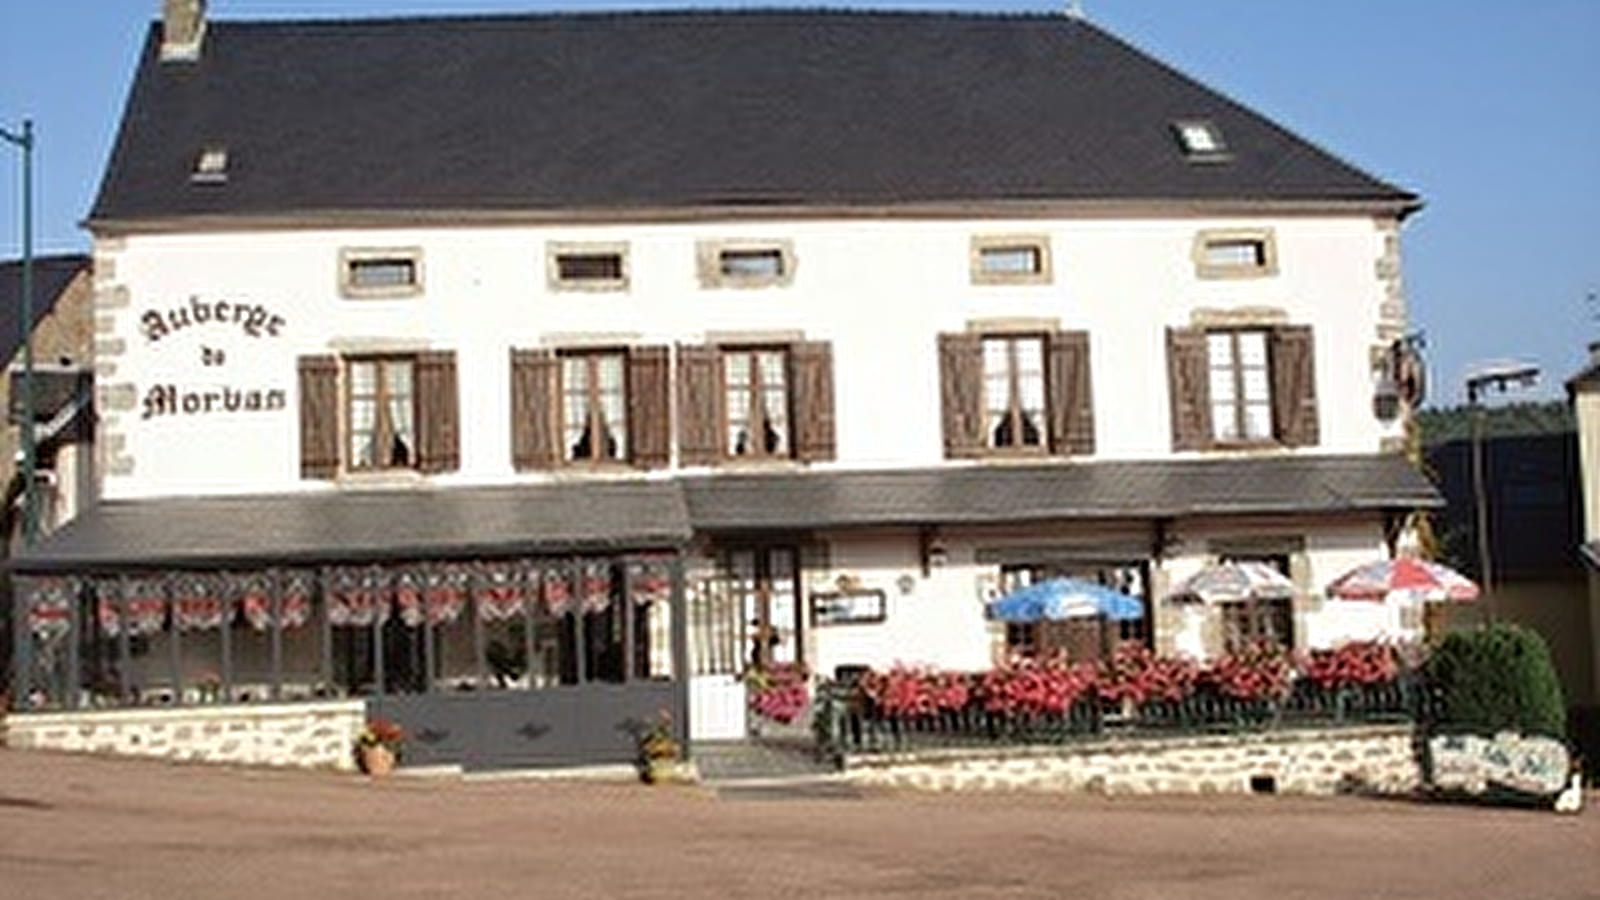 The Little Pub - Auberge du Morvan